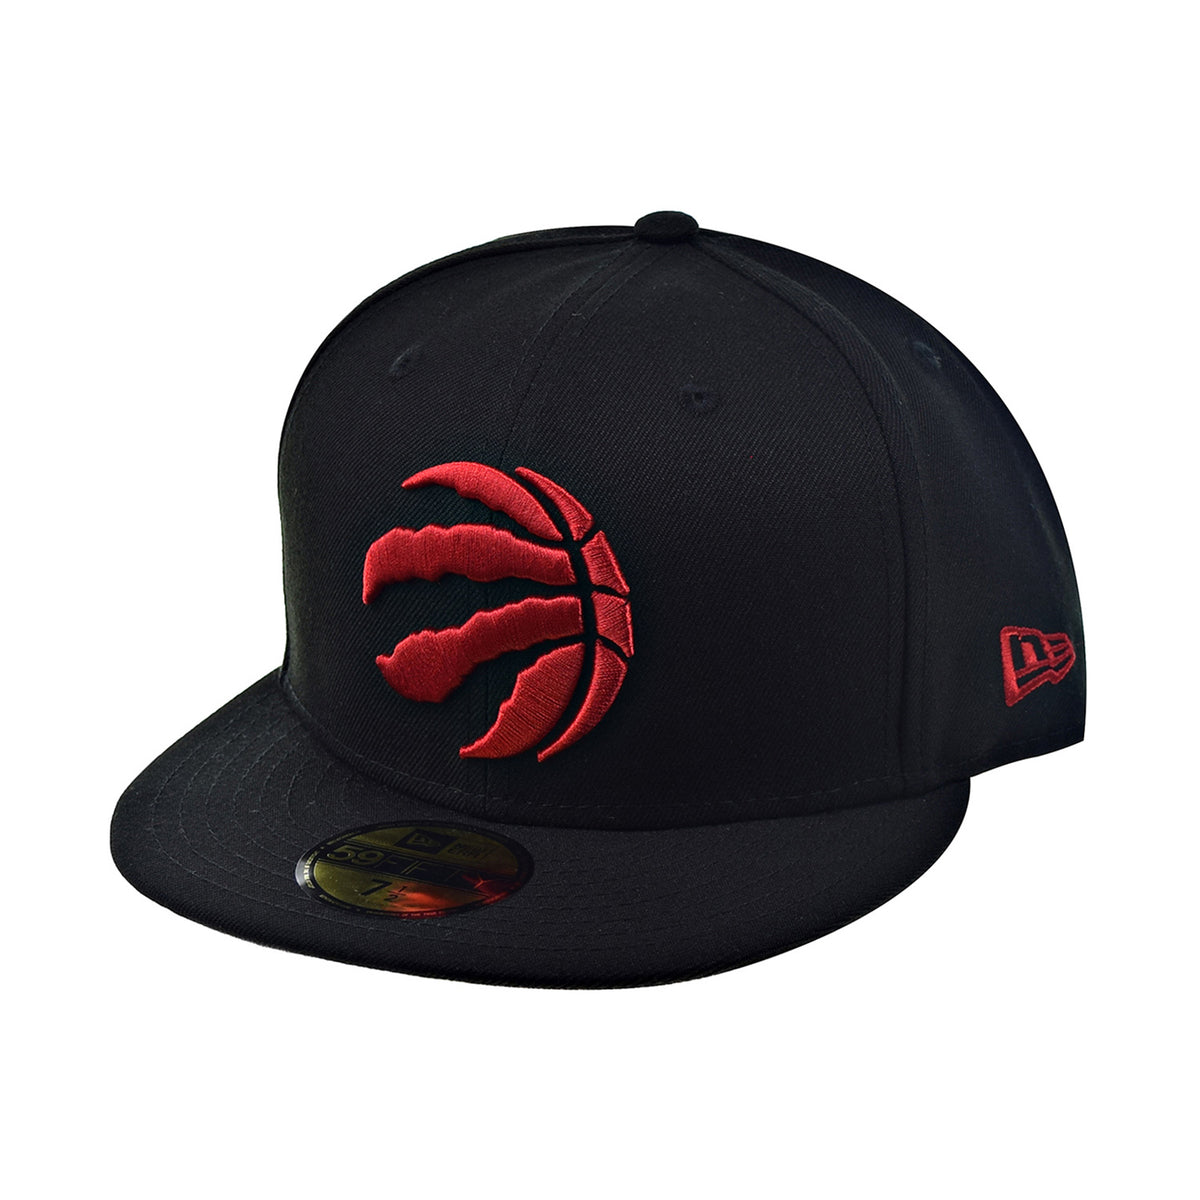 Raptors NBA Finals shirts, hats, memorabilia: Check out 2019